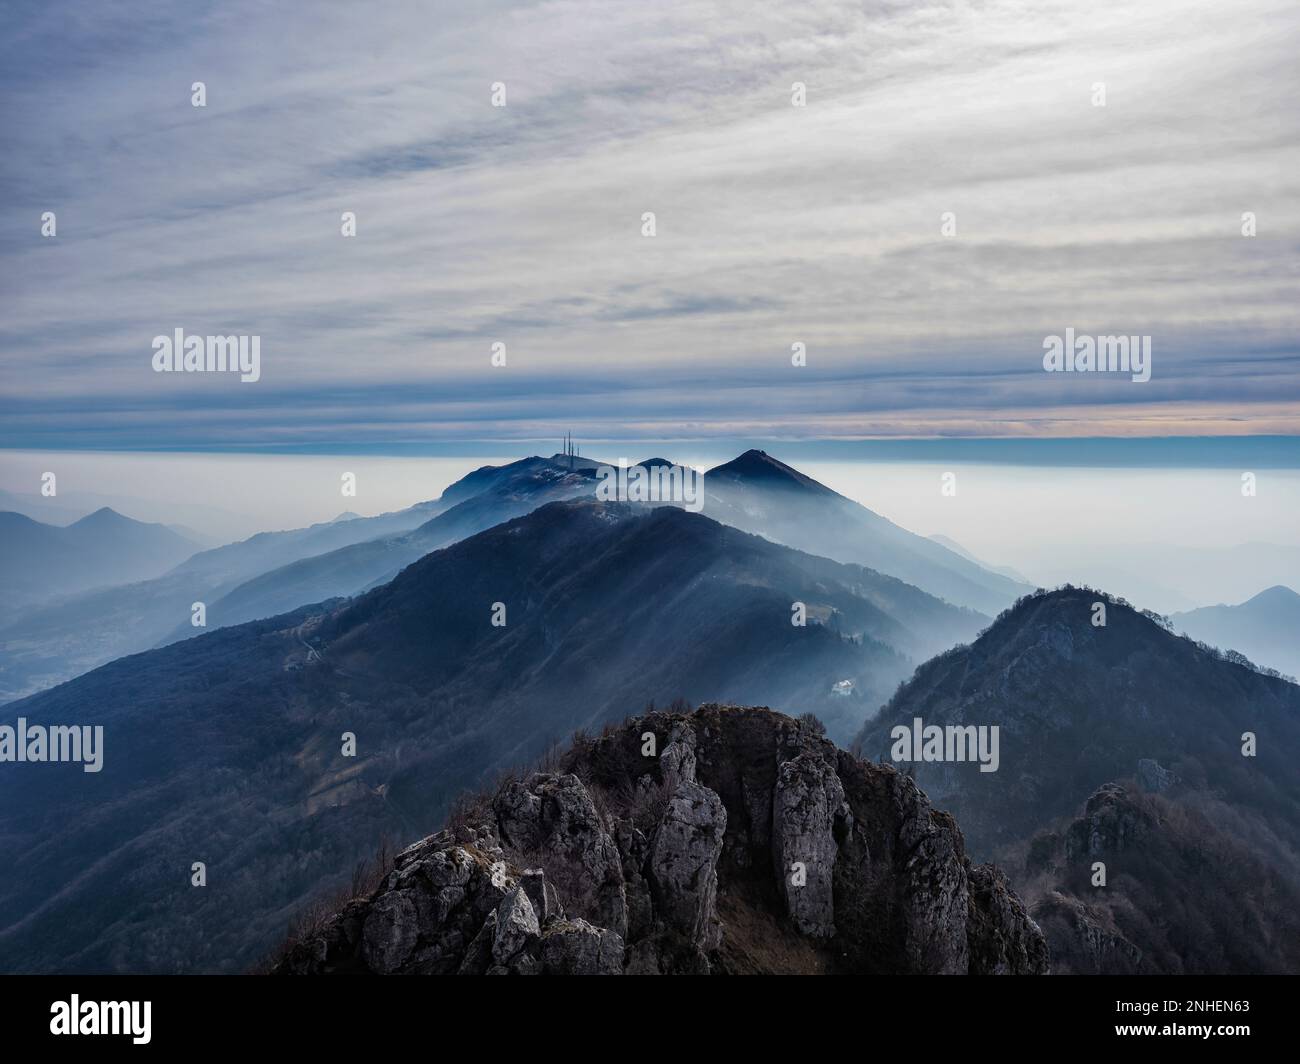 Paesaggio invernale nelle alpi della Valle Imagna al mattino Foto Stock